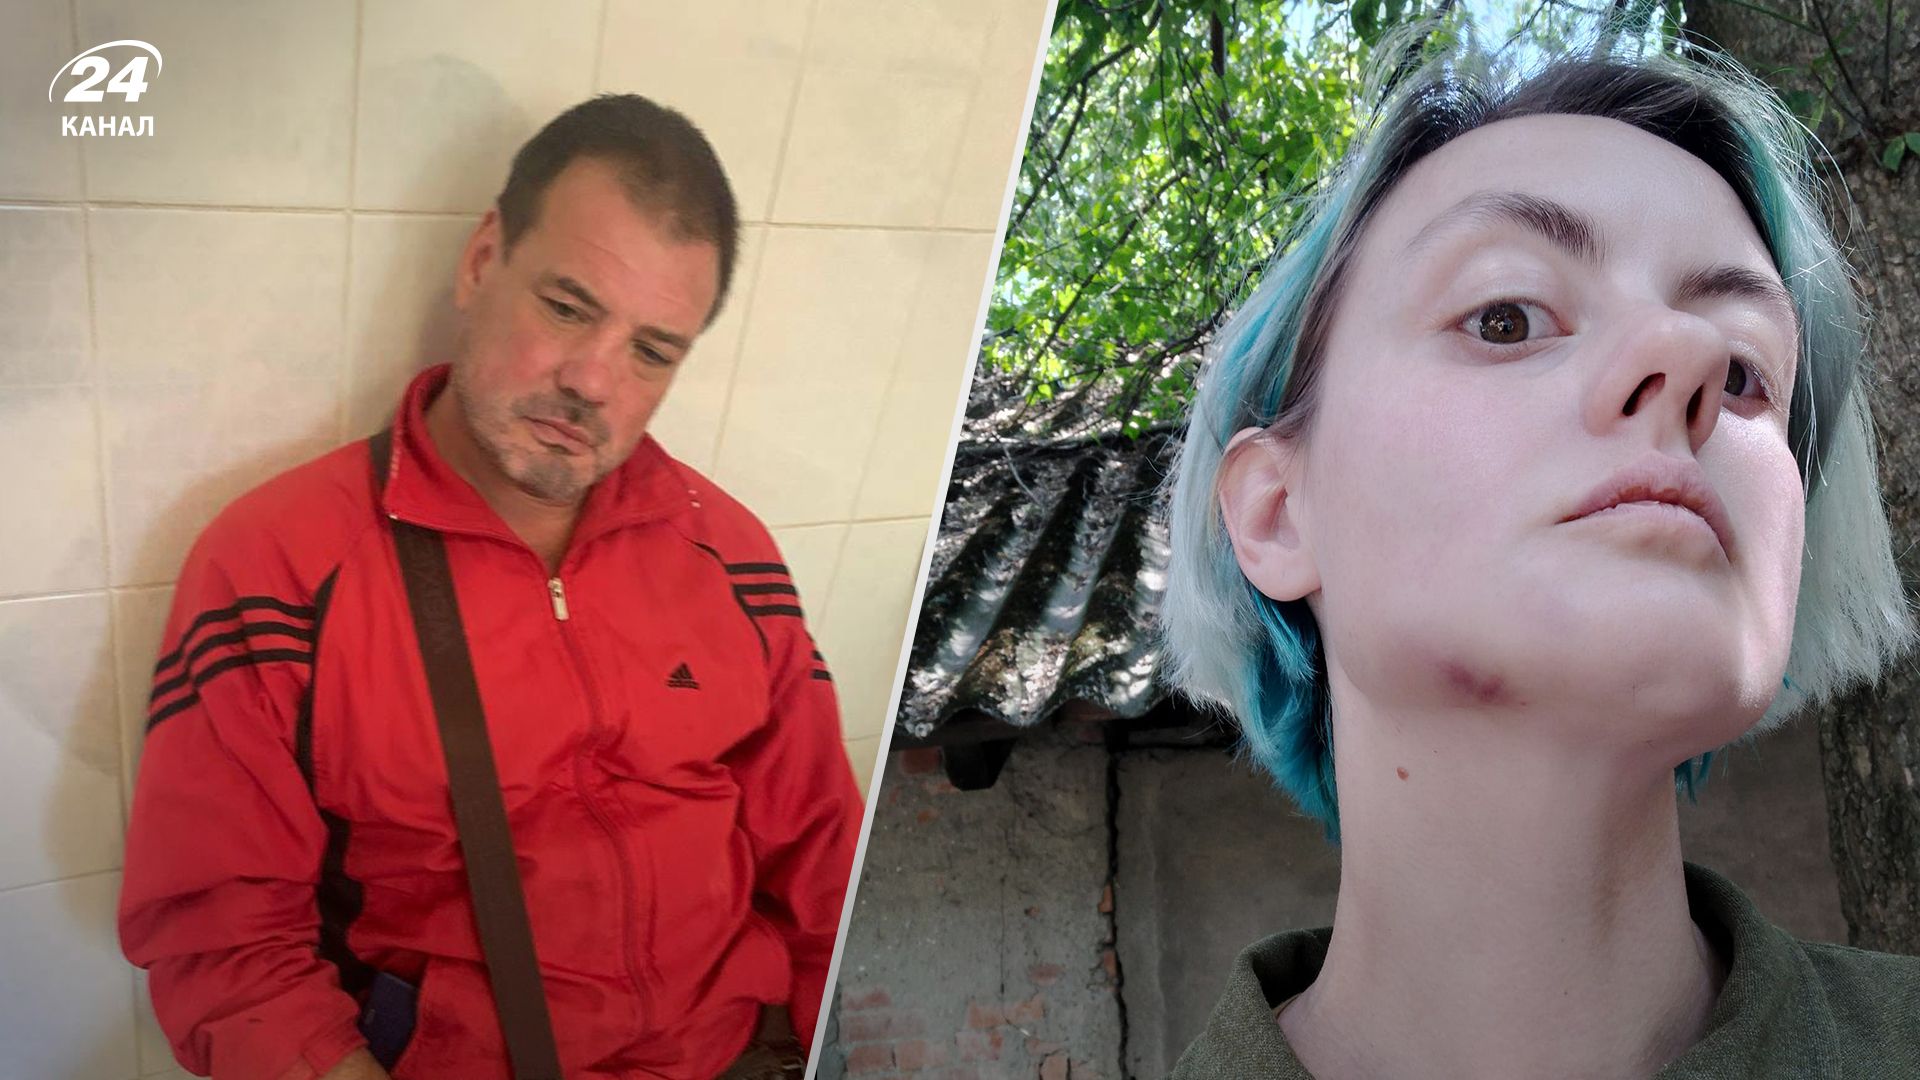 В Ужгороде нетрезвый майор ТЦК избил женщину на улице на глазах мужчины-военного - 24 Канал